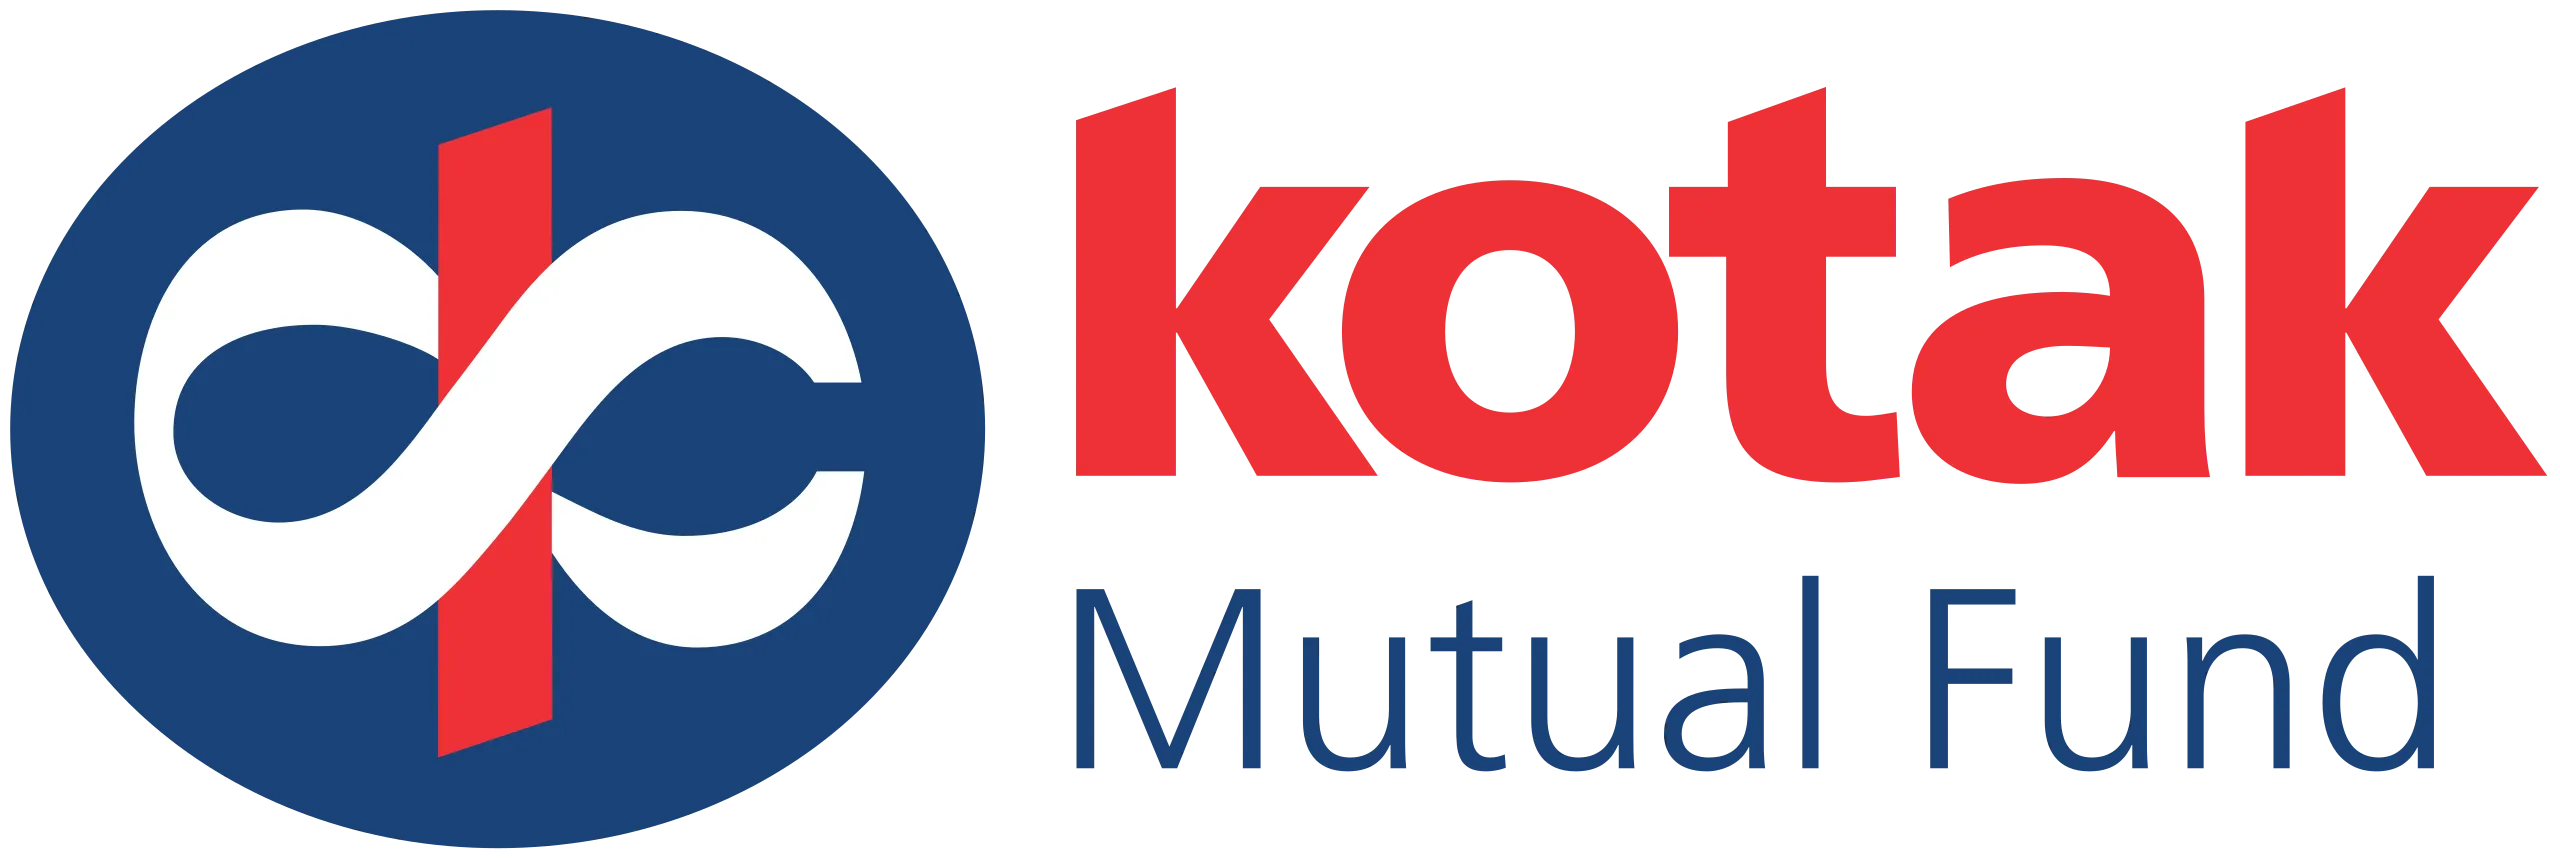 2560px-Kotak_Mutual_Fund_logo.sv